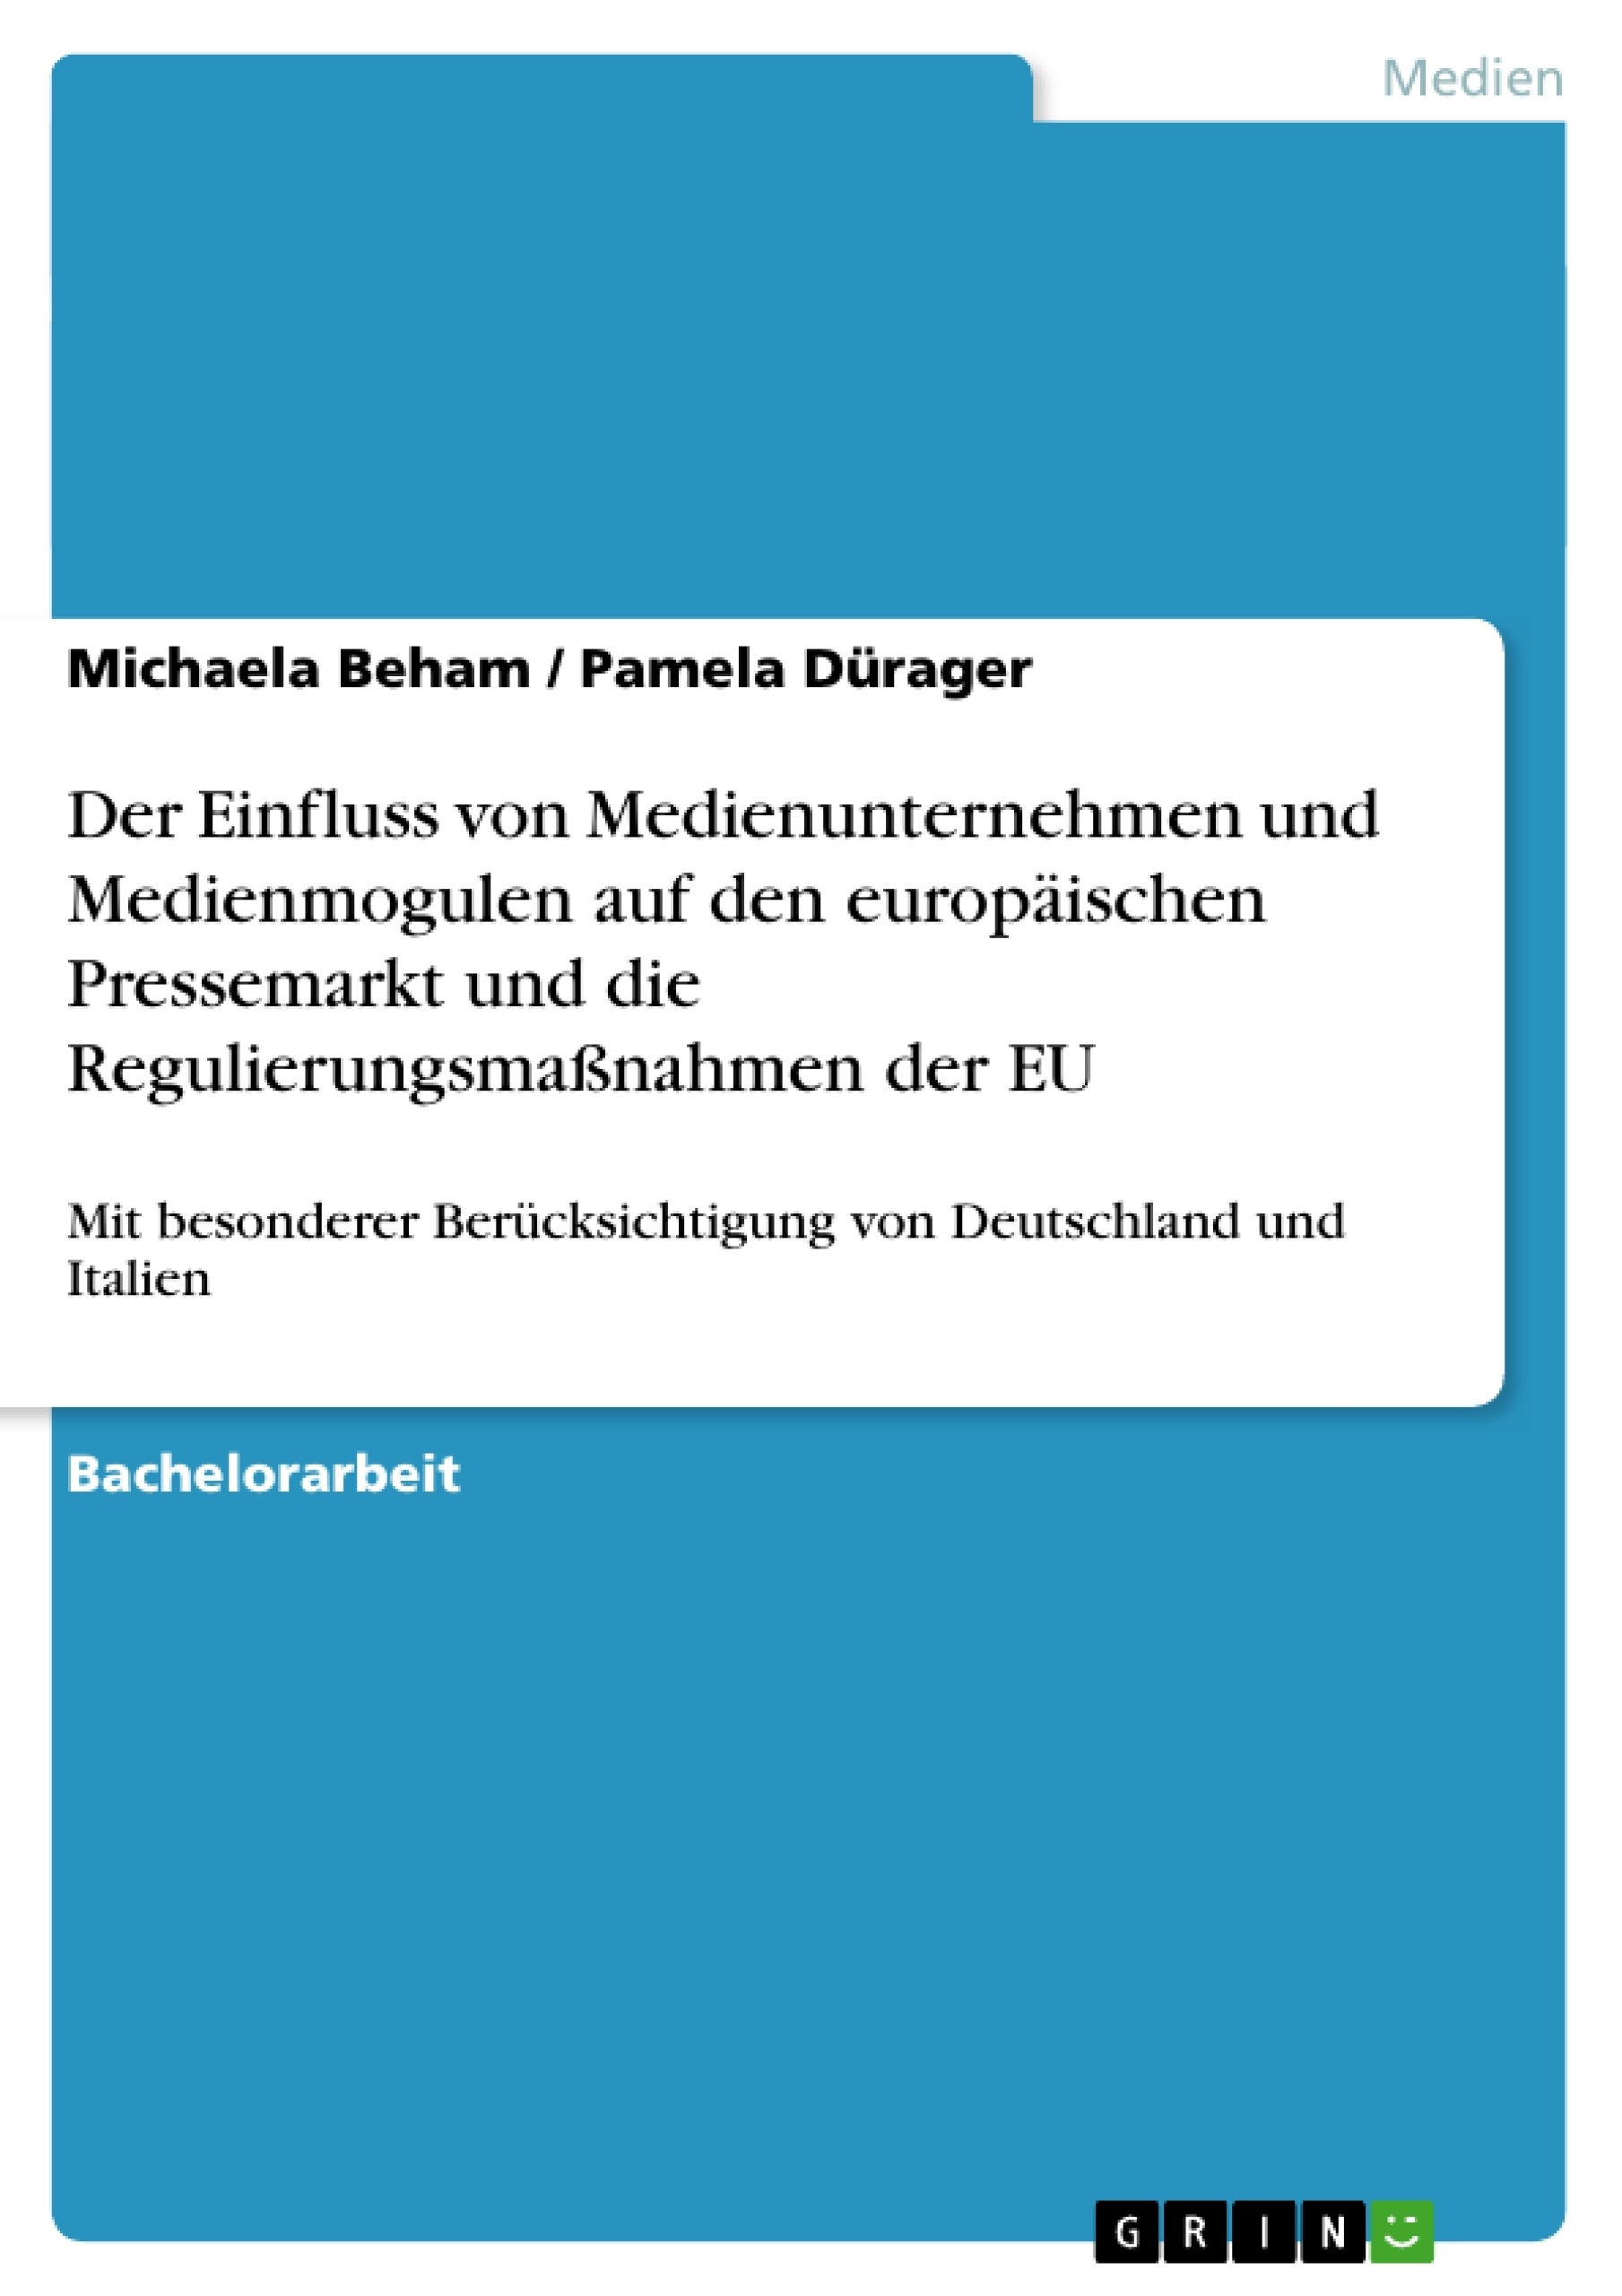 Titel: Der Einfluss von Medienunternehmen und Medienmogulen auf den europäischen Pressemarkt und die Regulierungsmaßnahmen der EU